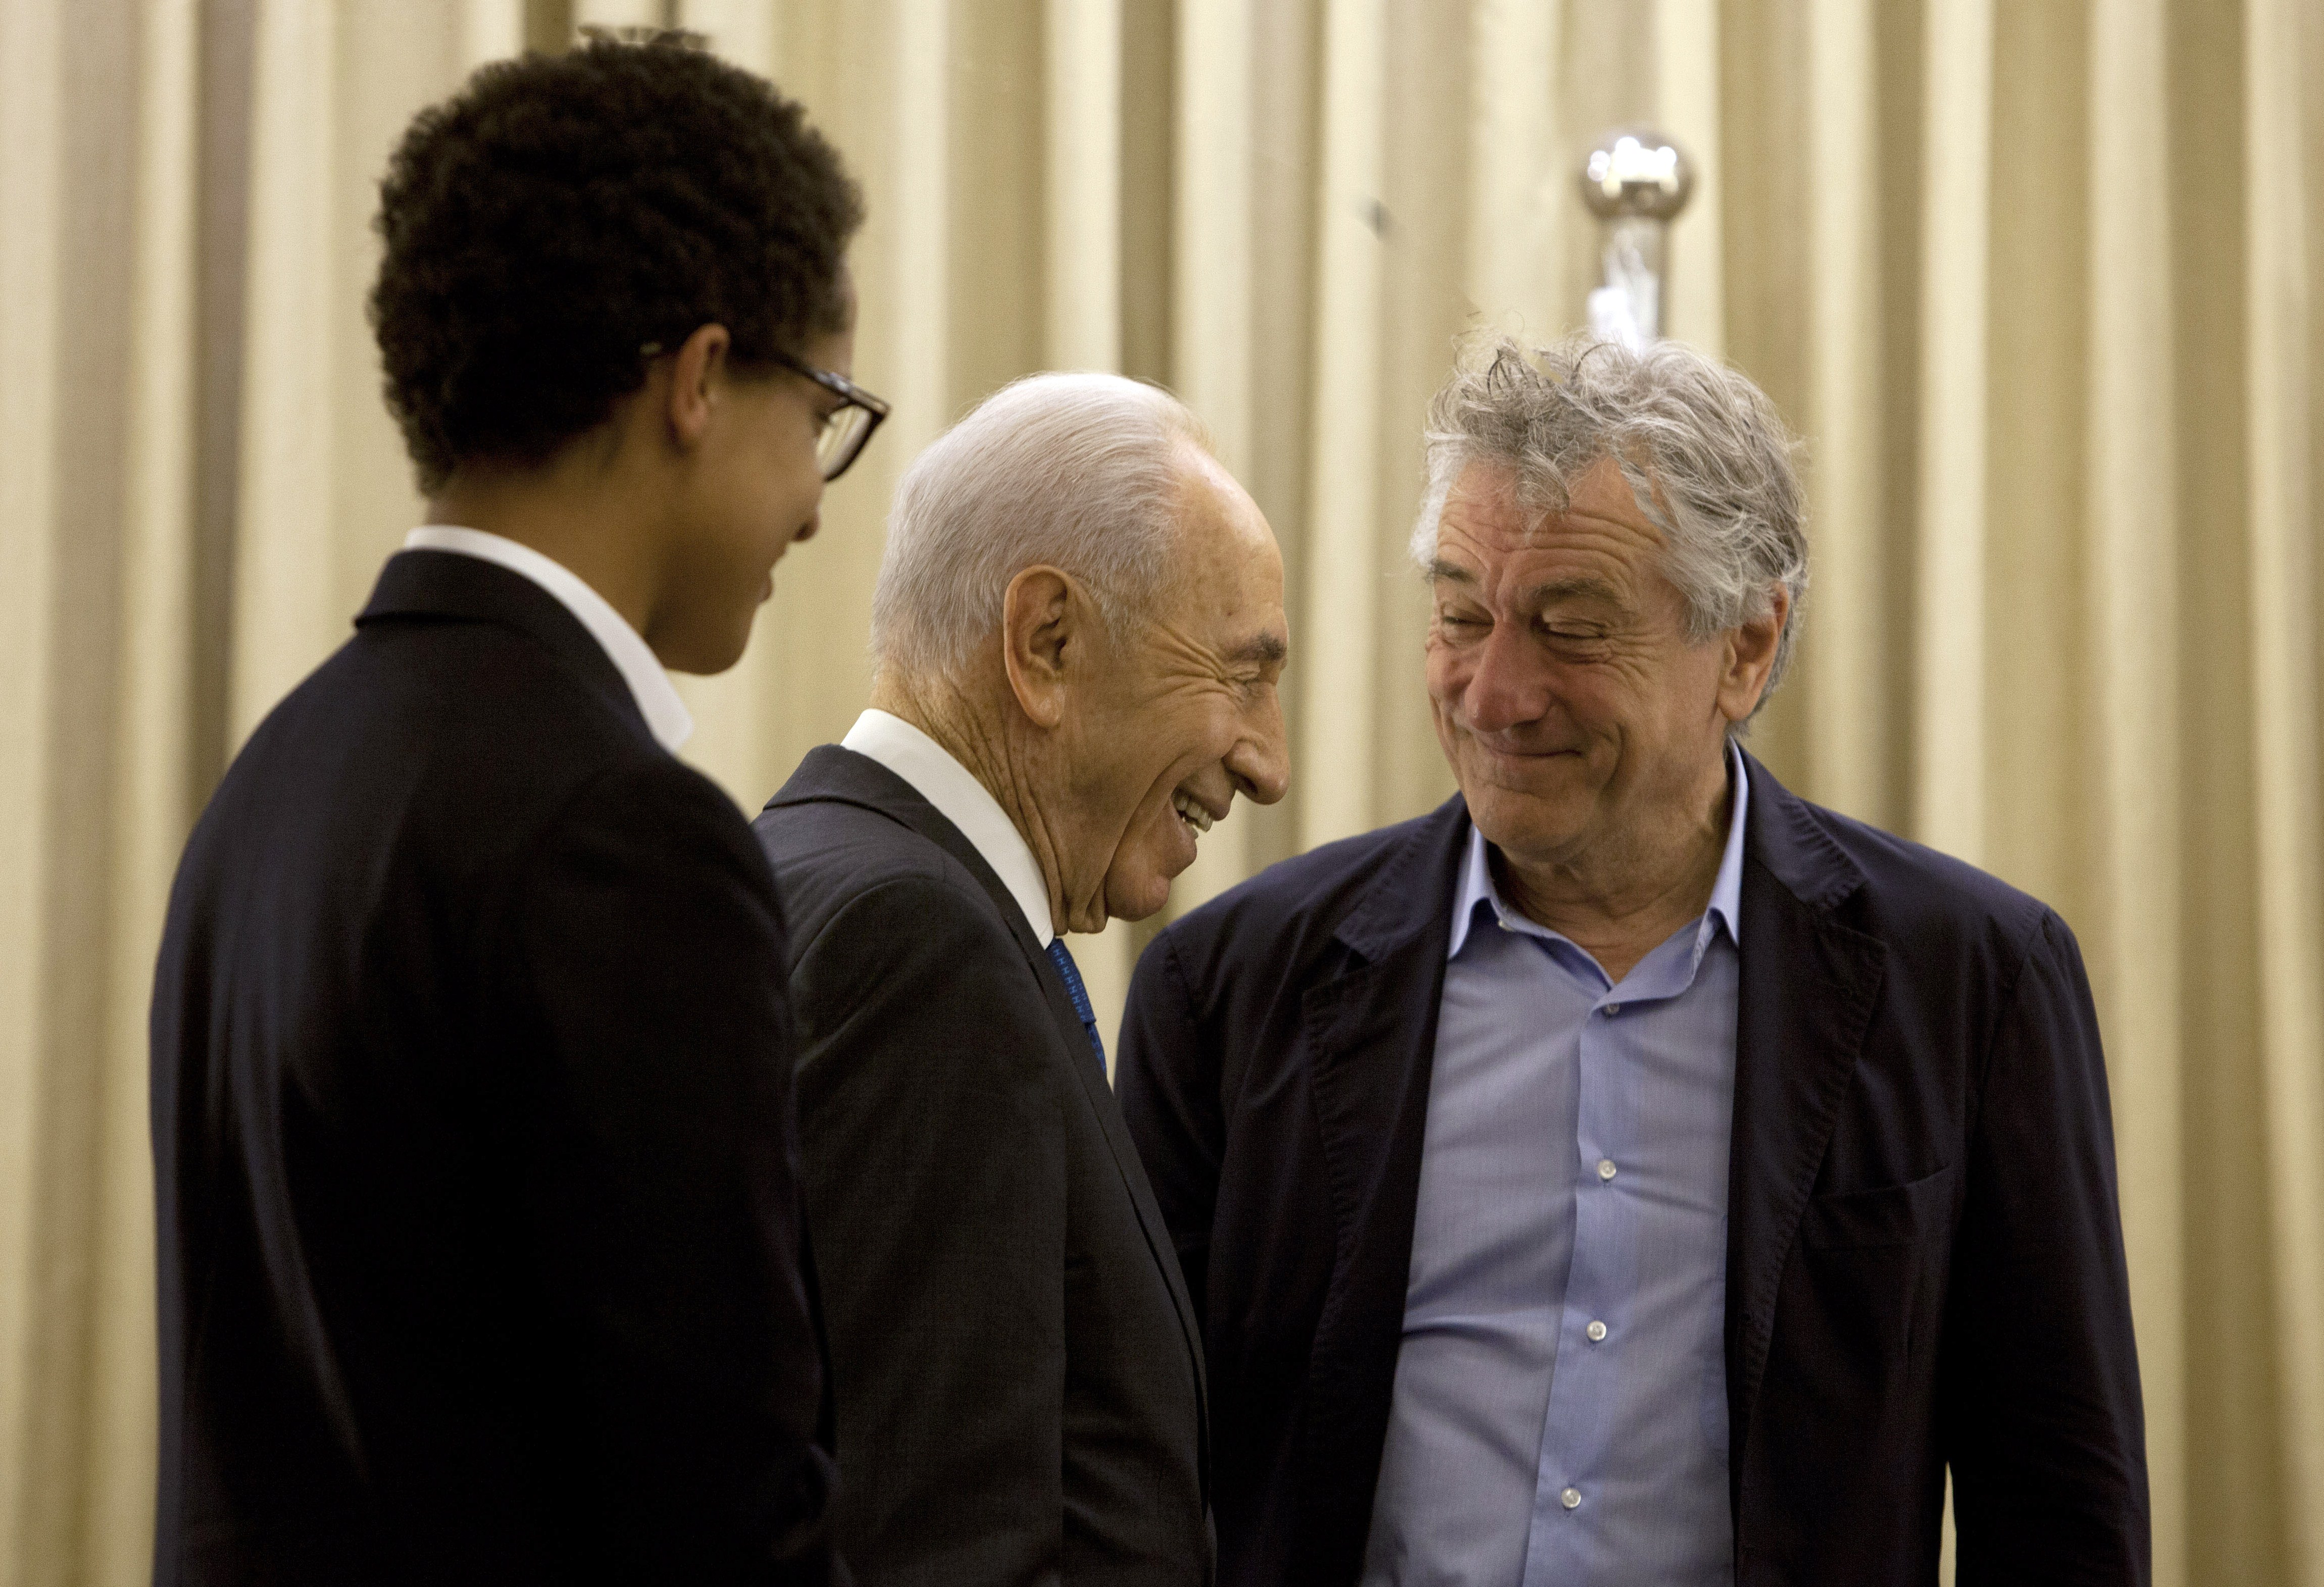 El presidente de Israel, Shimon Peres, pasa junto al actor estadounidense Robert De Niro y su hijo Julian Henry De Niro (I) durante su reunión en la residencia del presidente en Jerusalén, el 18 de junio de 2013. | Foto: Getty Images